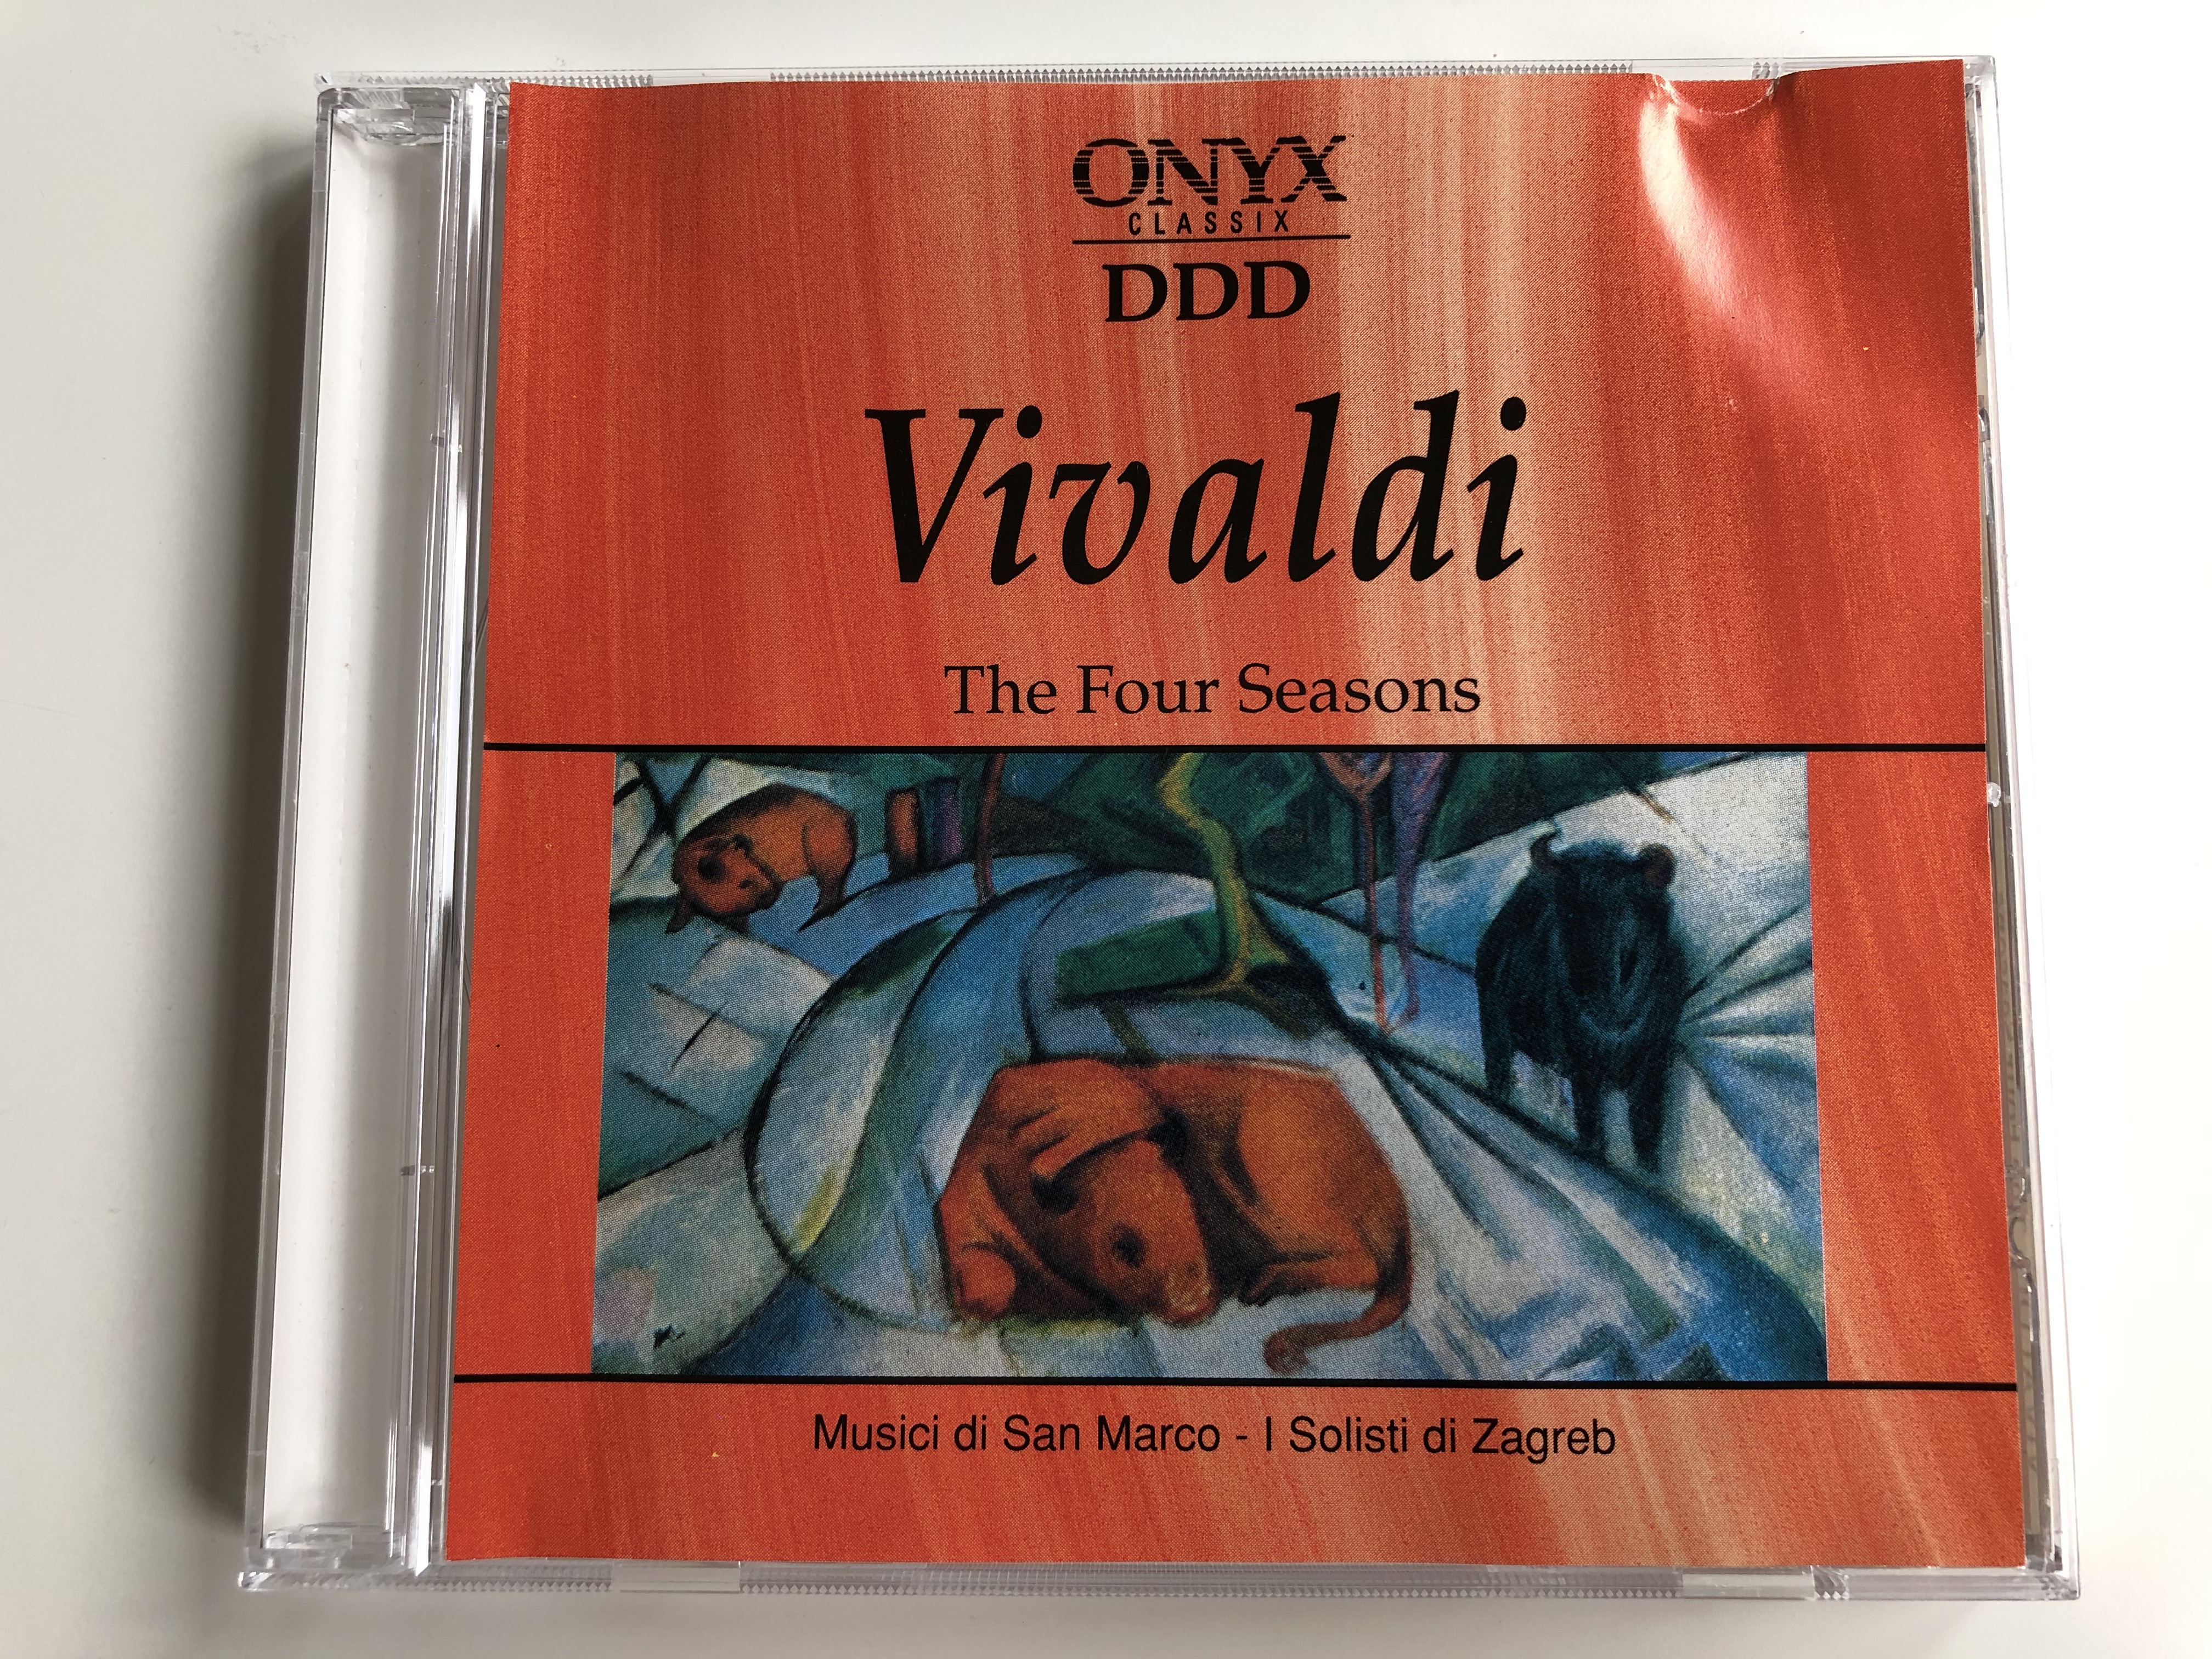 vivaldi-the-four-seasons-musici-di-san-marco-i-solisti-di-zagreb-onyx-classix-audio-cd-1994-stereo-666312-1-.jpg